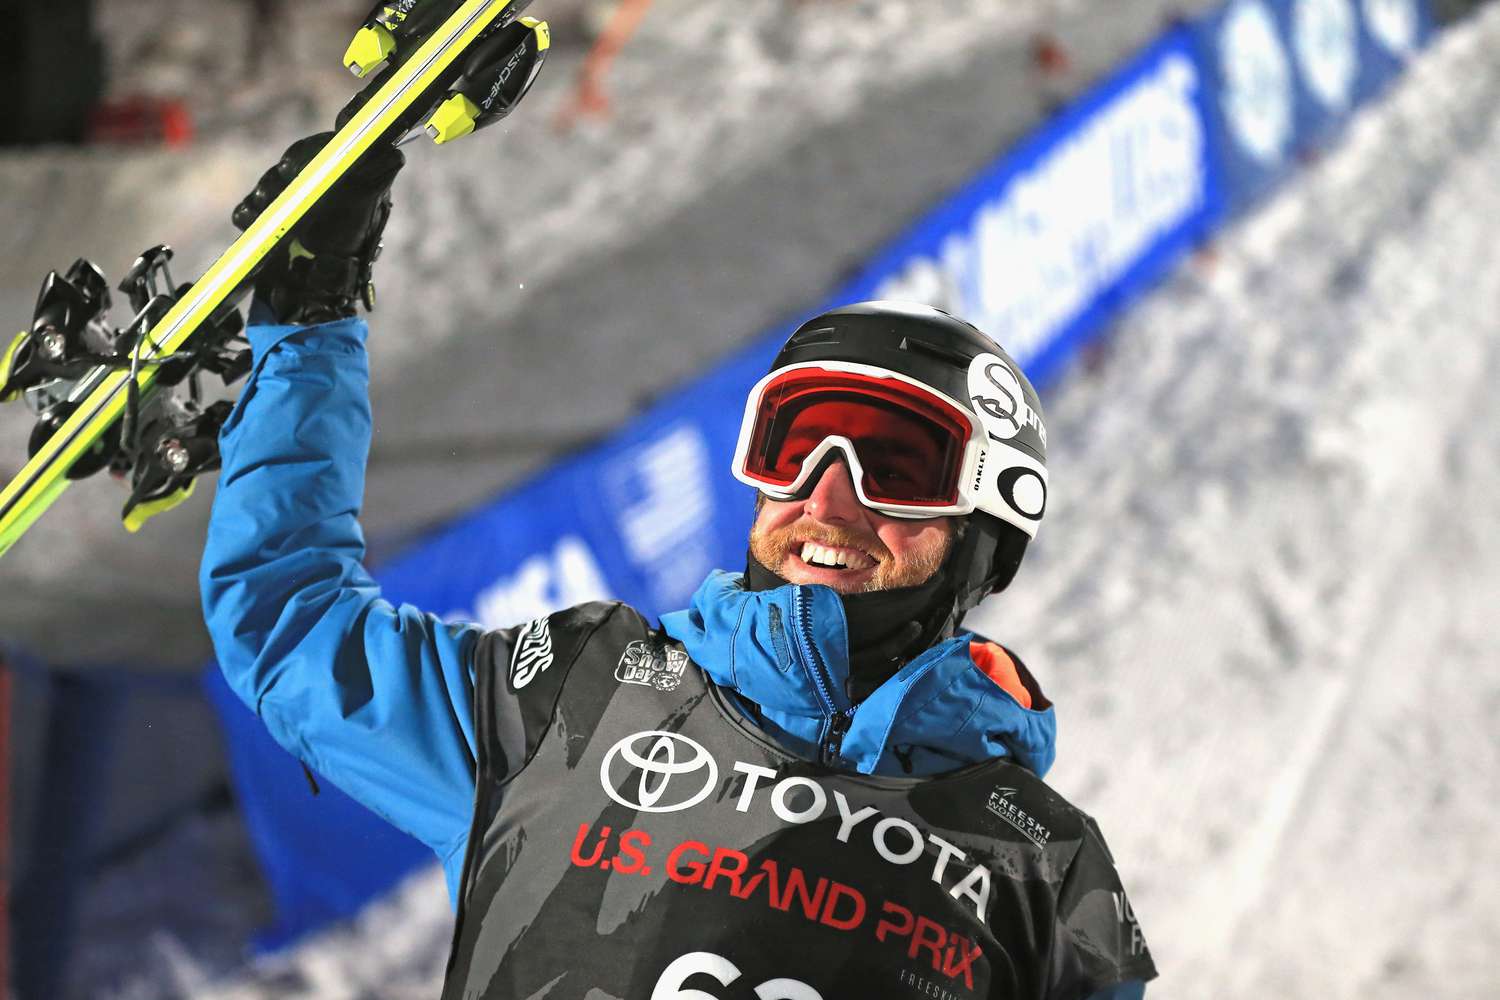 El esquiador de estilo libre estadounidense Kyle Smaine muere en una avalancha en Japón